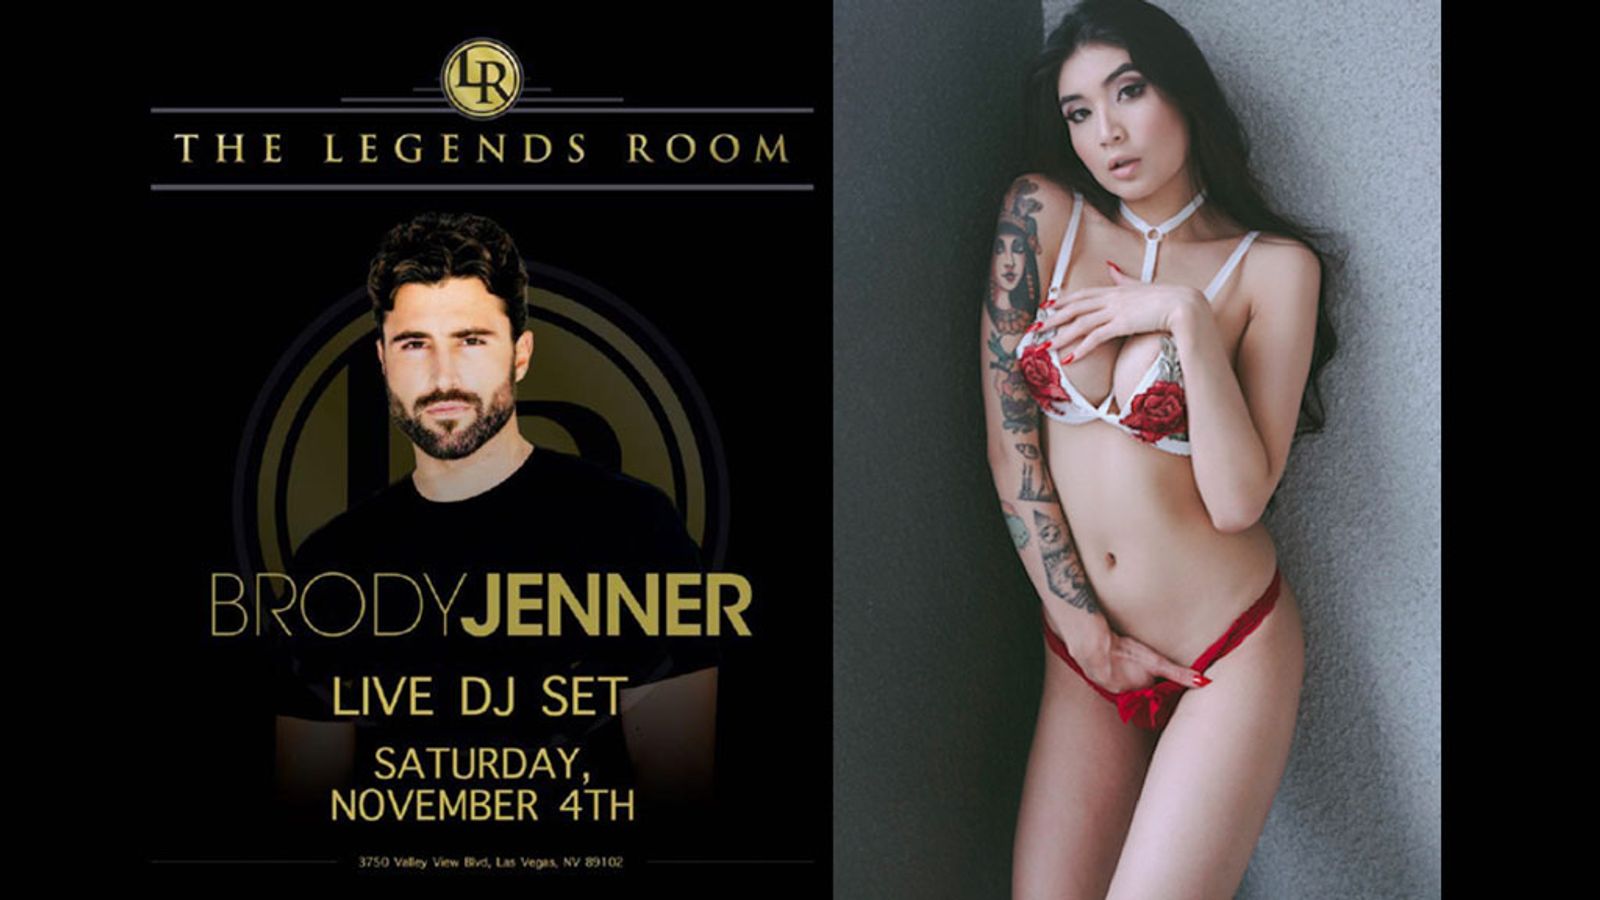 Legends Room Will Have Brenna Sparks & DJ Brody Jenner Nov. 4